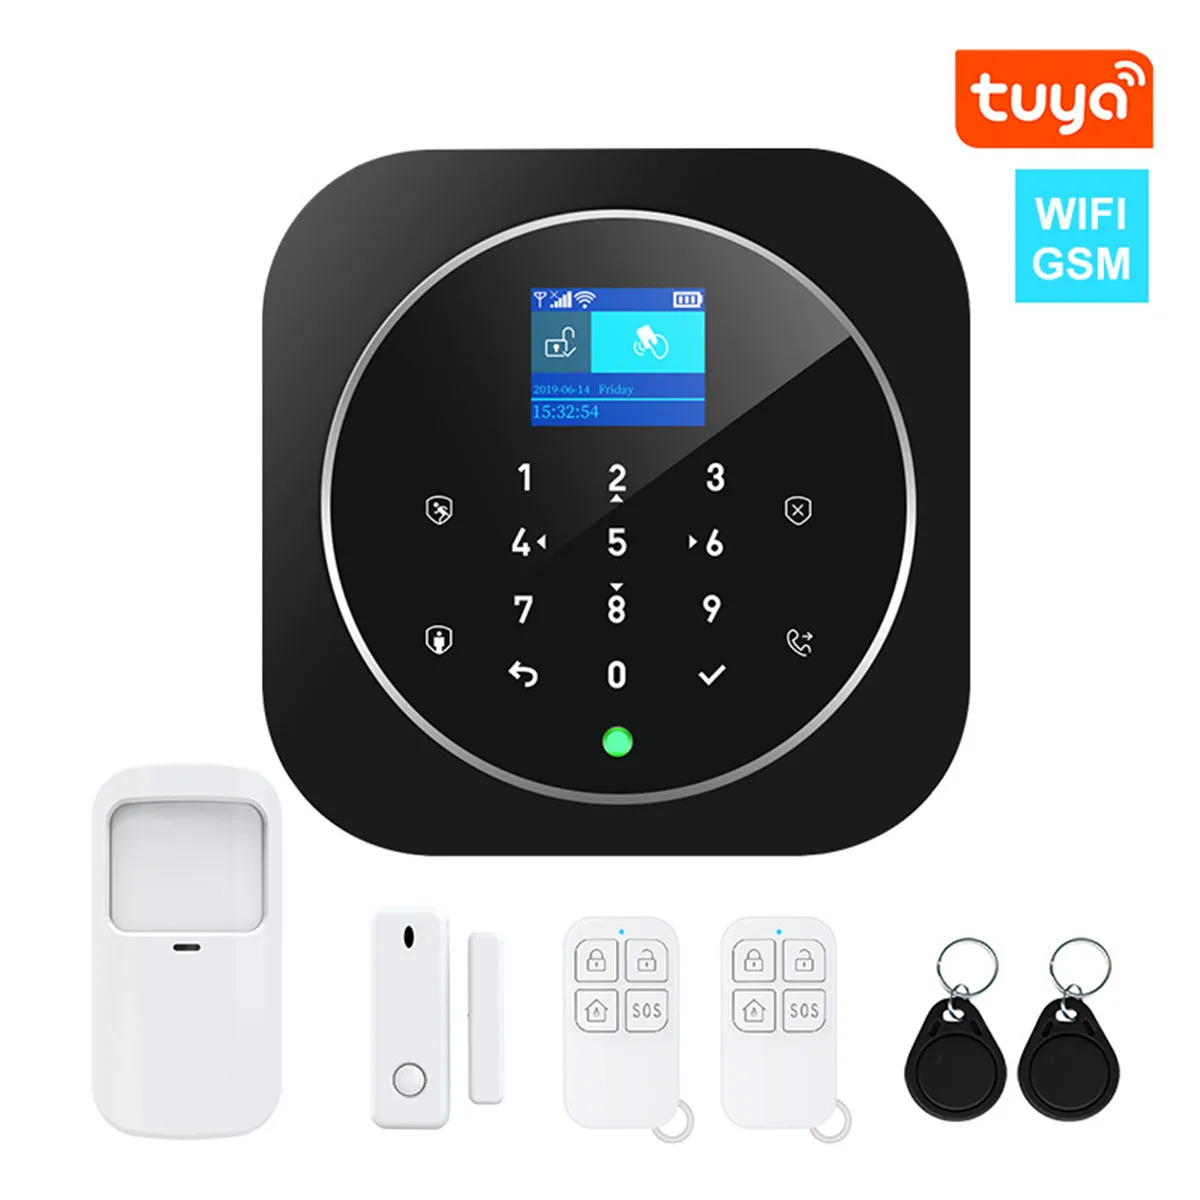 TUYA Inteligent WIFI GSM Alarm System Home Security Burglar Alarm Sensor